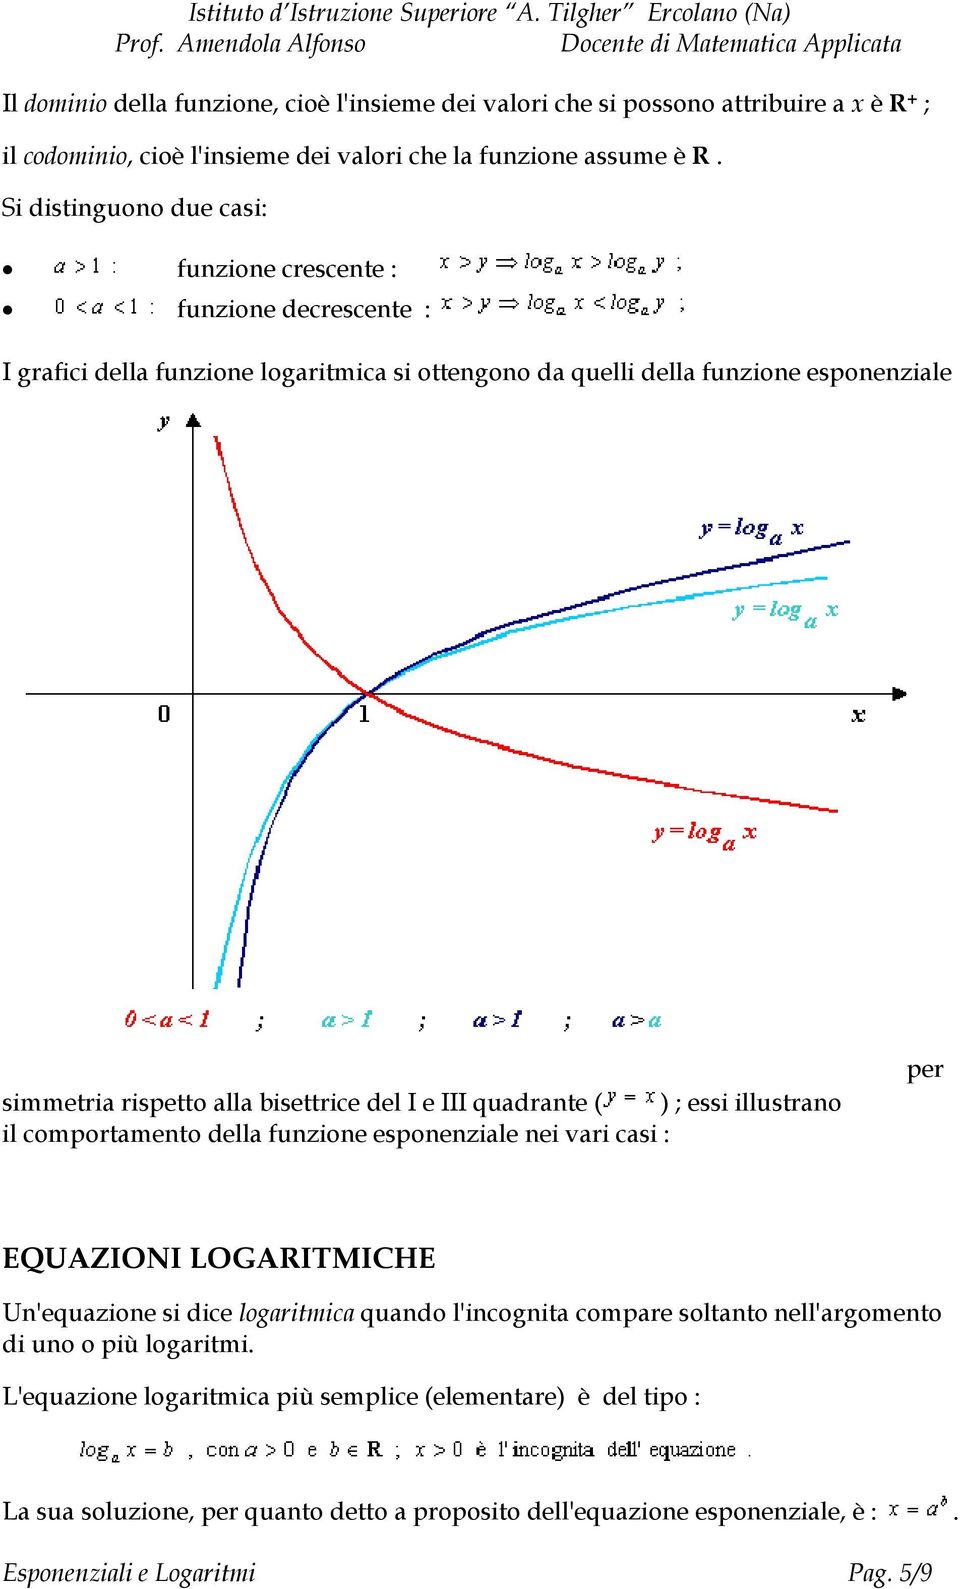 simmetria rispetto alla bisettrice del I e III quadrante ( ) ; essi illustrano il comportamento della funzione esponenziale nei vari casi : per EQUAZIONI LOGARITMICHE Un'equazione si dice logaritmica